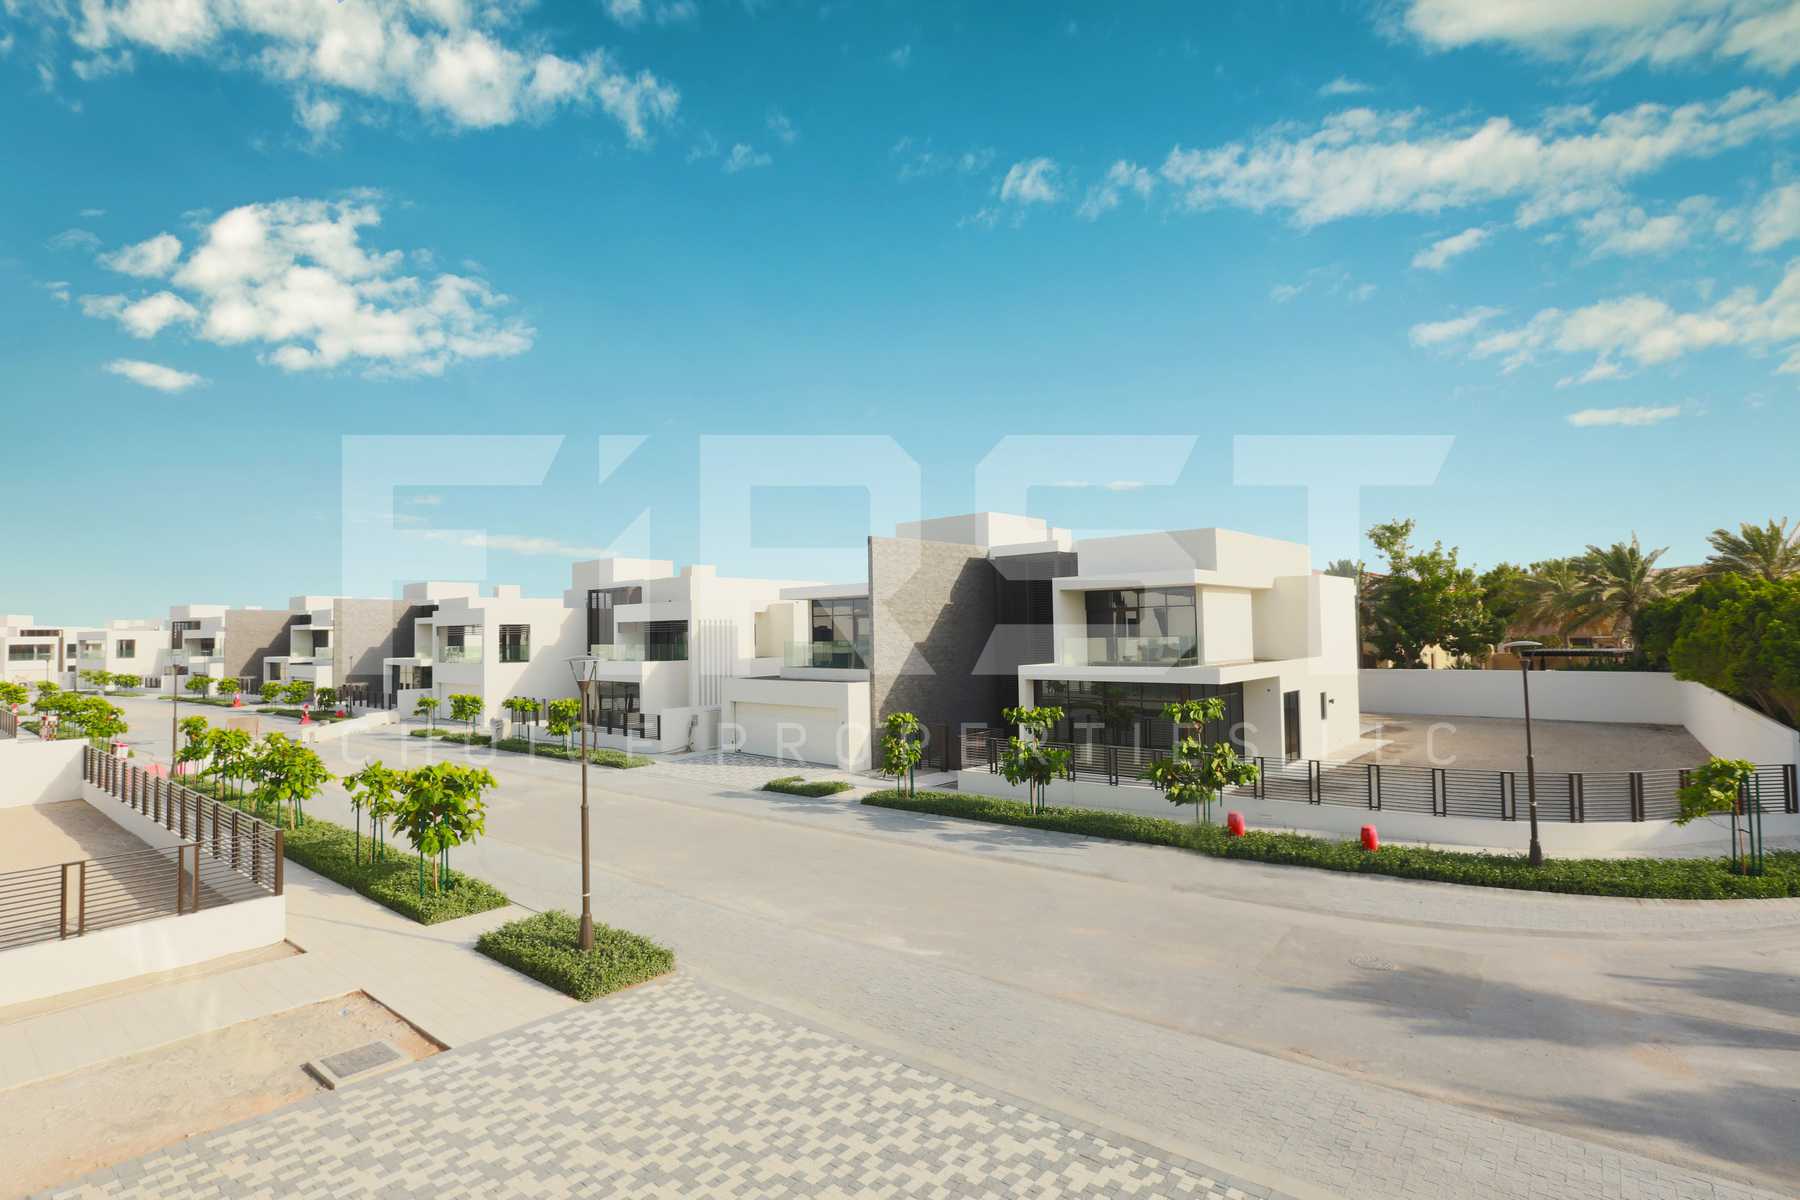 External Photo of 5 Bedroom Villa in Jawaher Saadiyat Saadiyat Island Abu Dhabi UAE (7).jpg